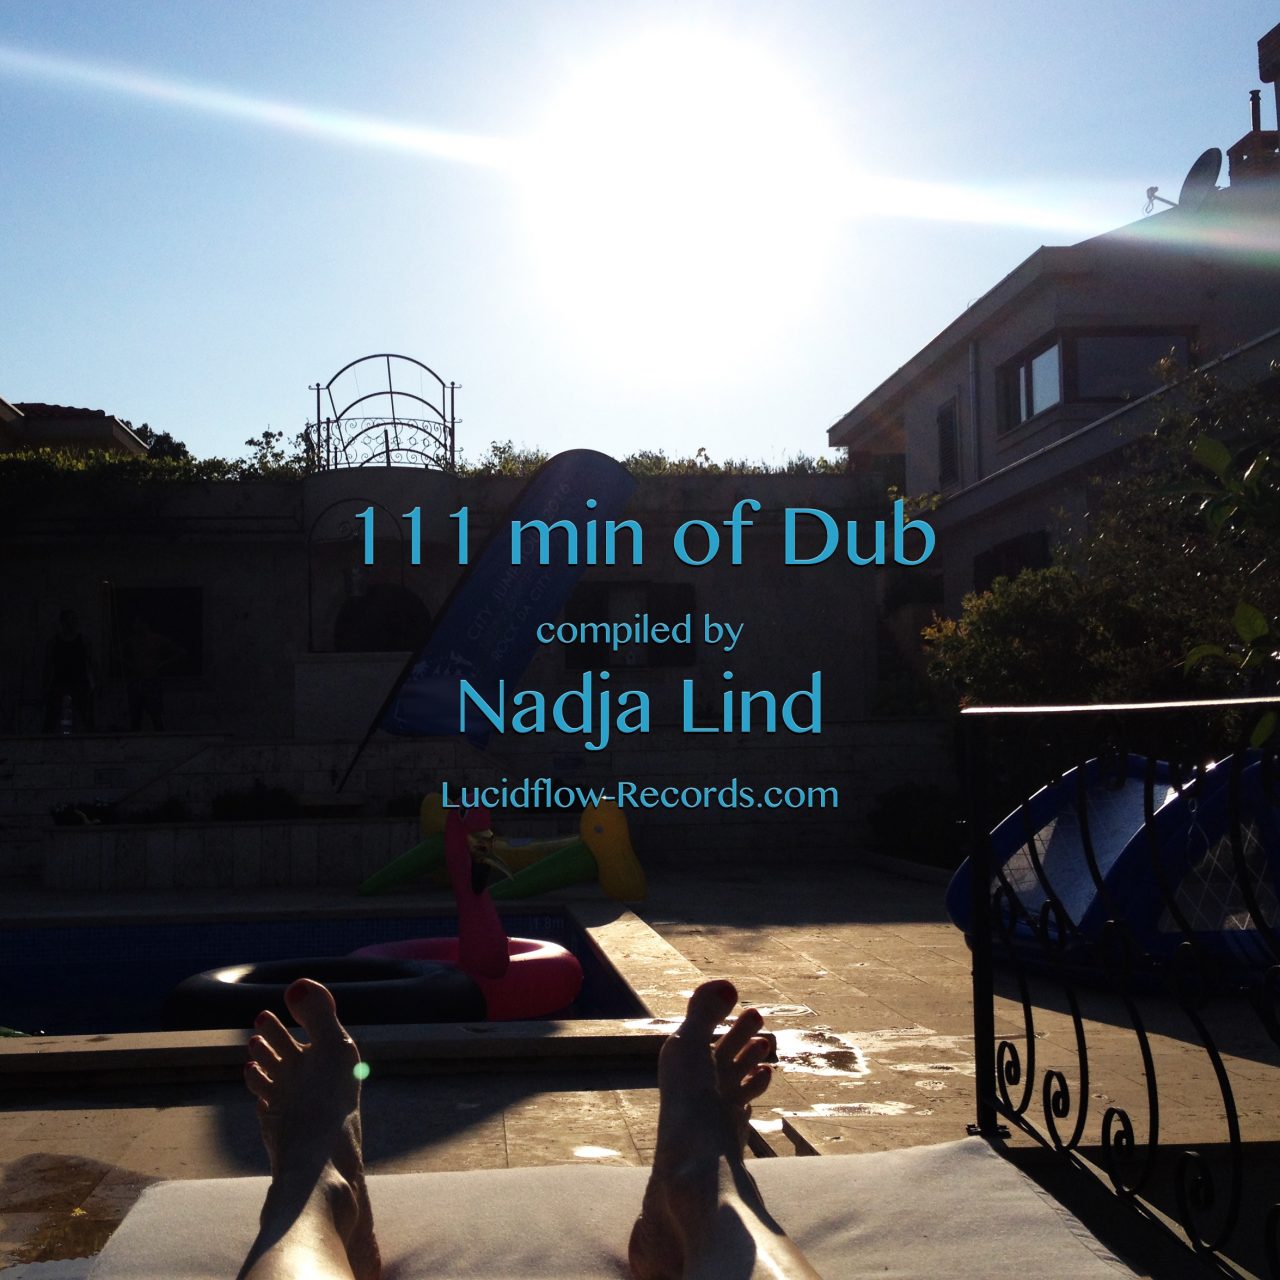 111 min of Dub by Nadja Lind